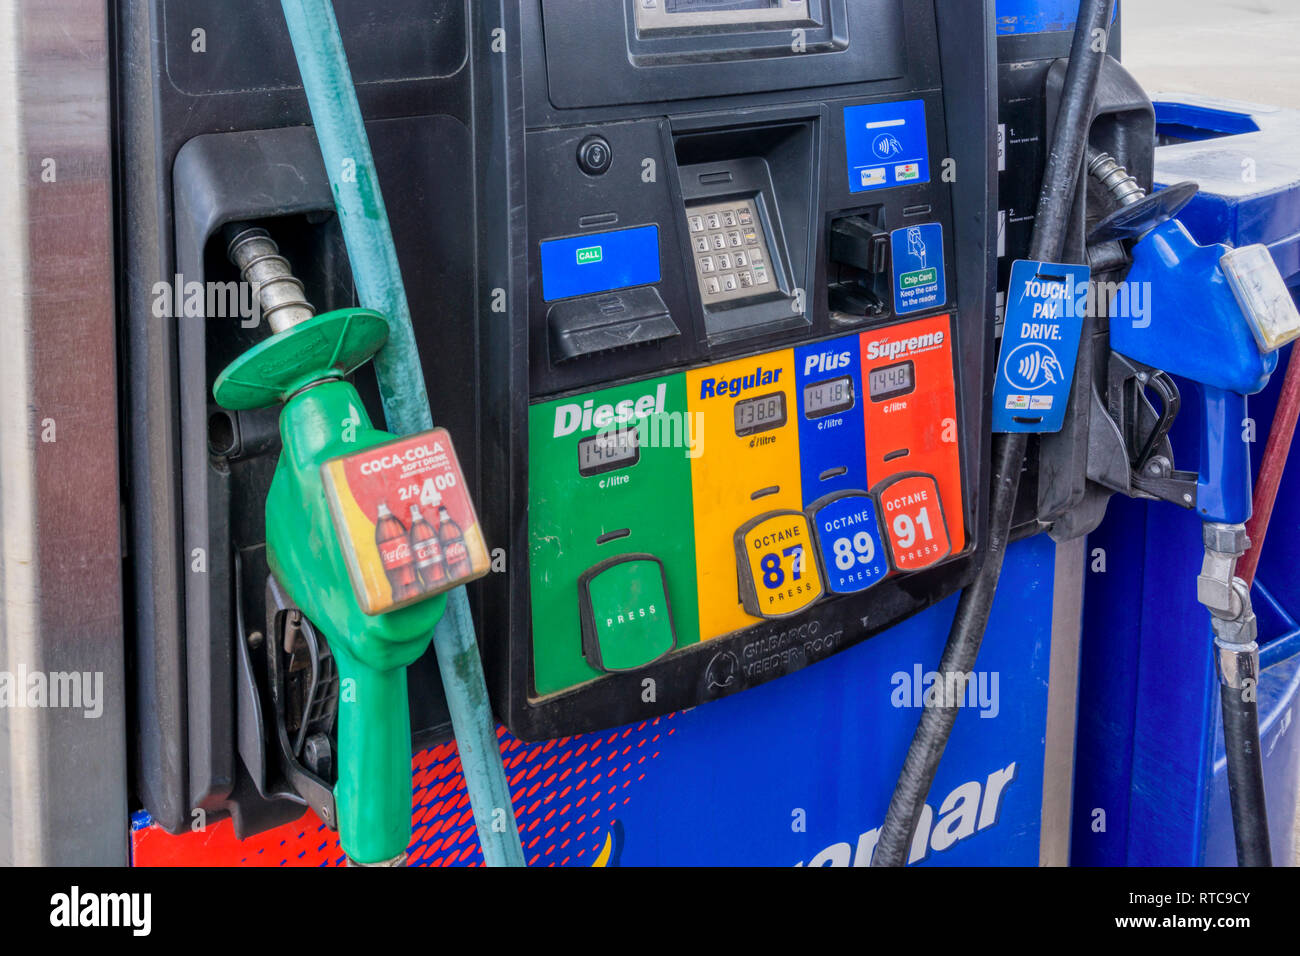 Self service pompa di benzina con il gasolio, regolari, Plus e qualità suprema. Foto Stock